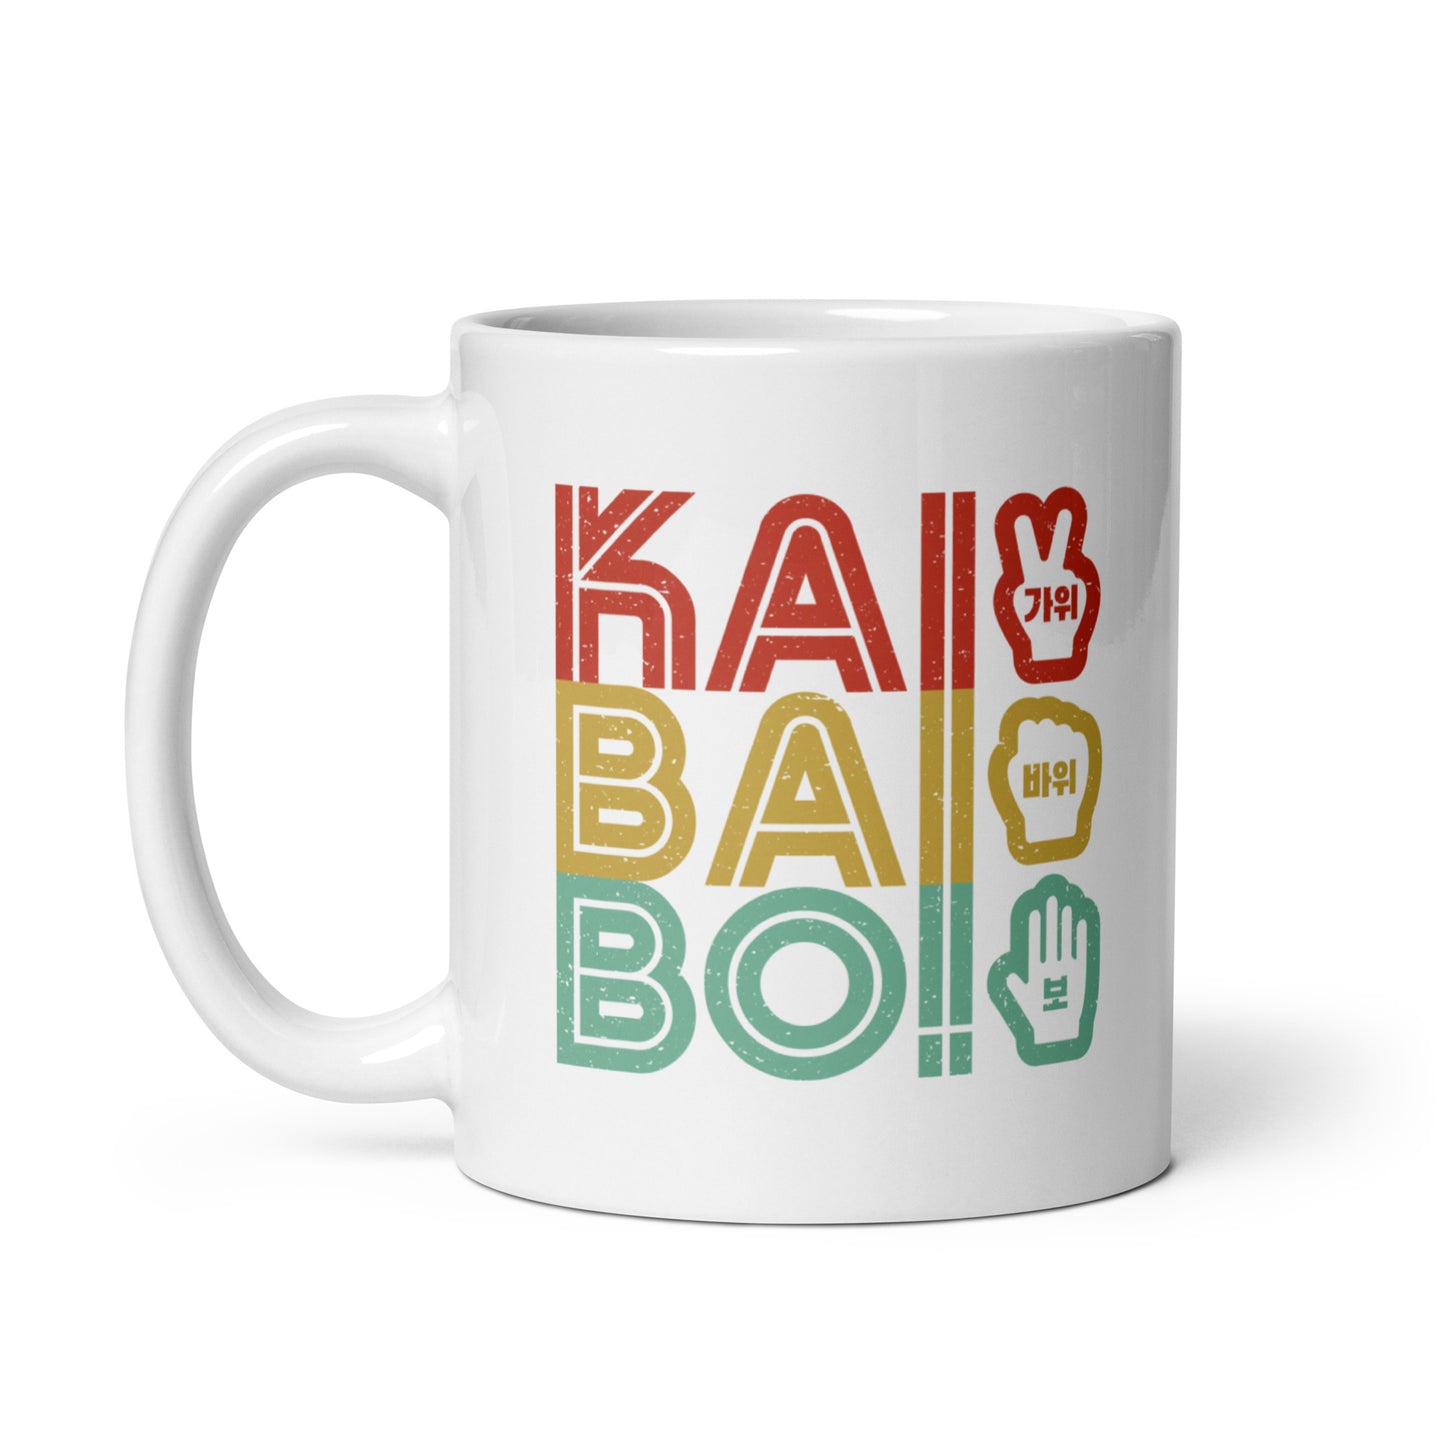 Korean "KAI BAI BO!" (Rock Paper Scissors)- Retro Coffee/Tea Mug